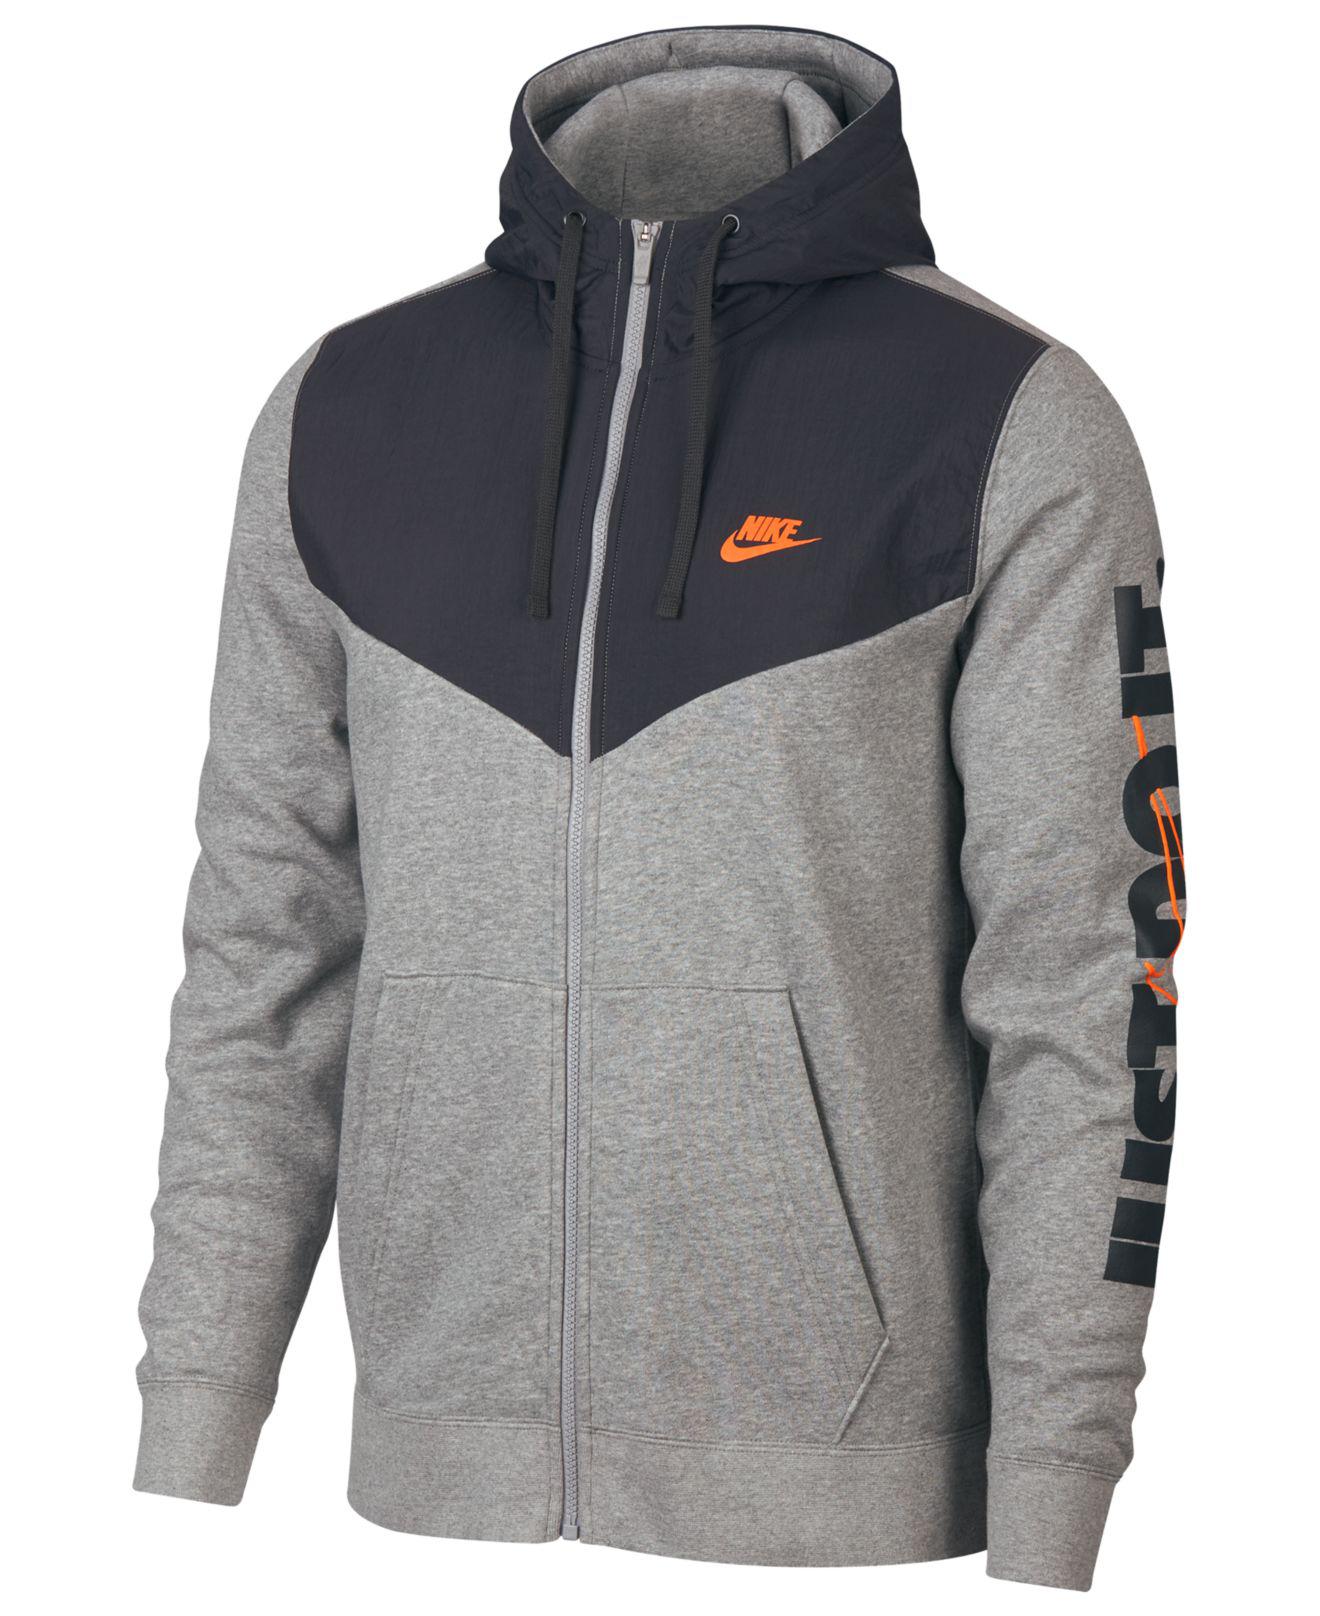 Nike Sportswear Just Do It Fleece Zip Hoodie in Grey (Gray) for Men - Lyst